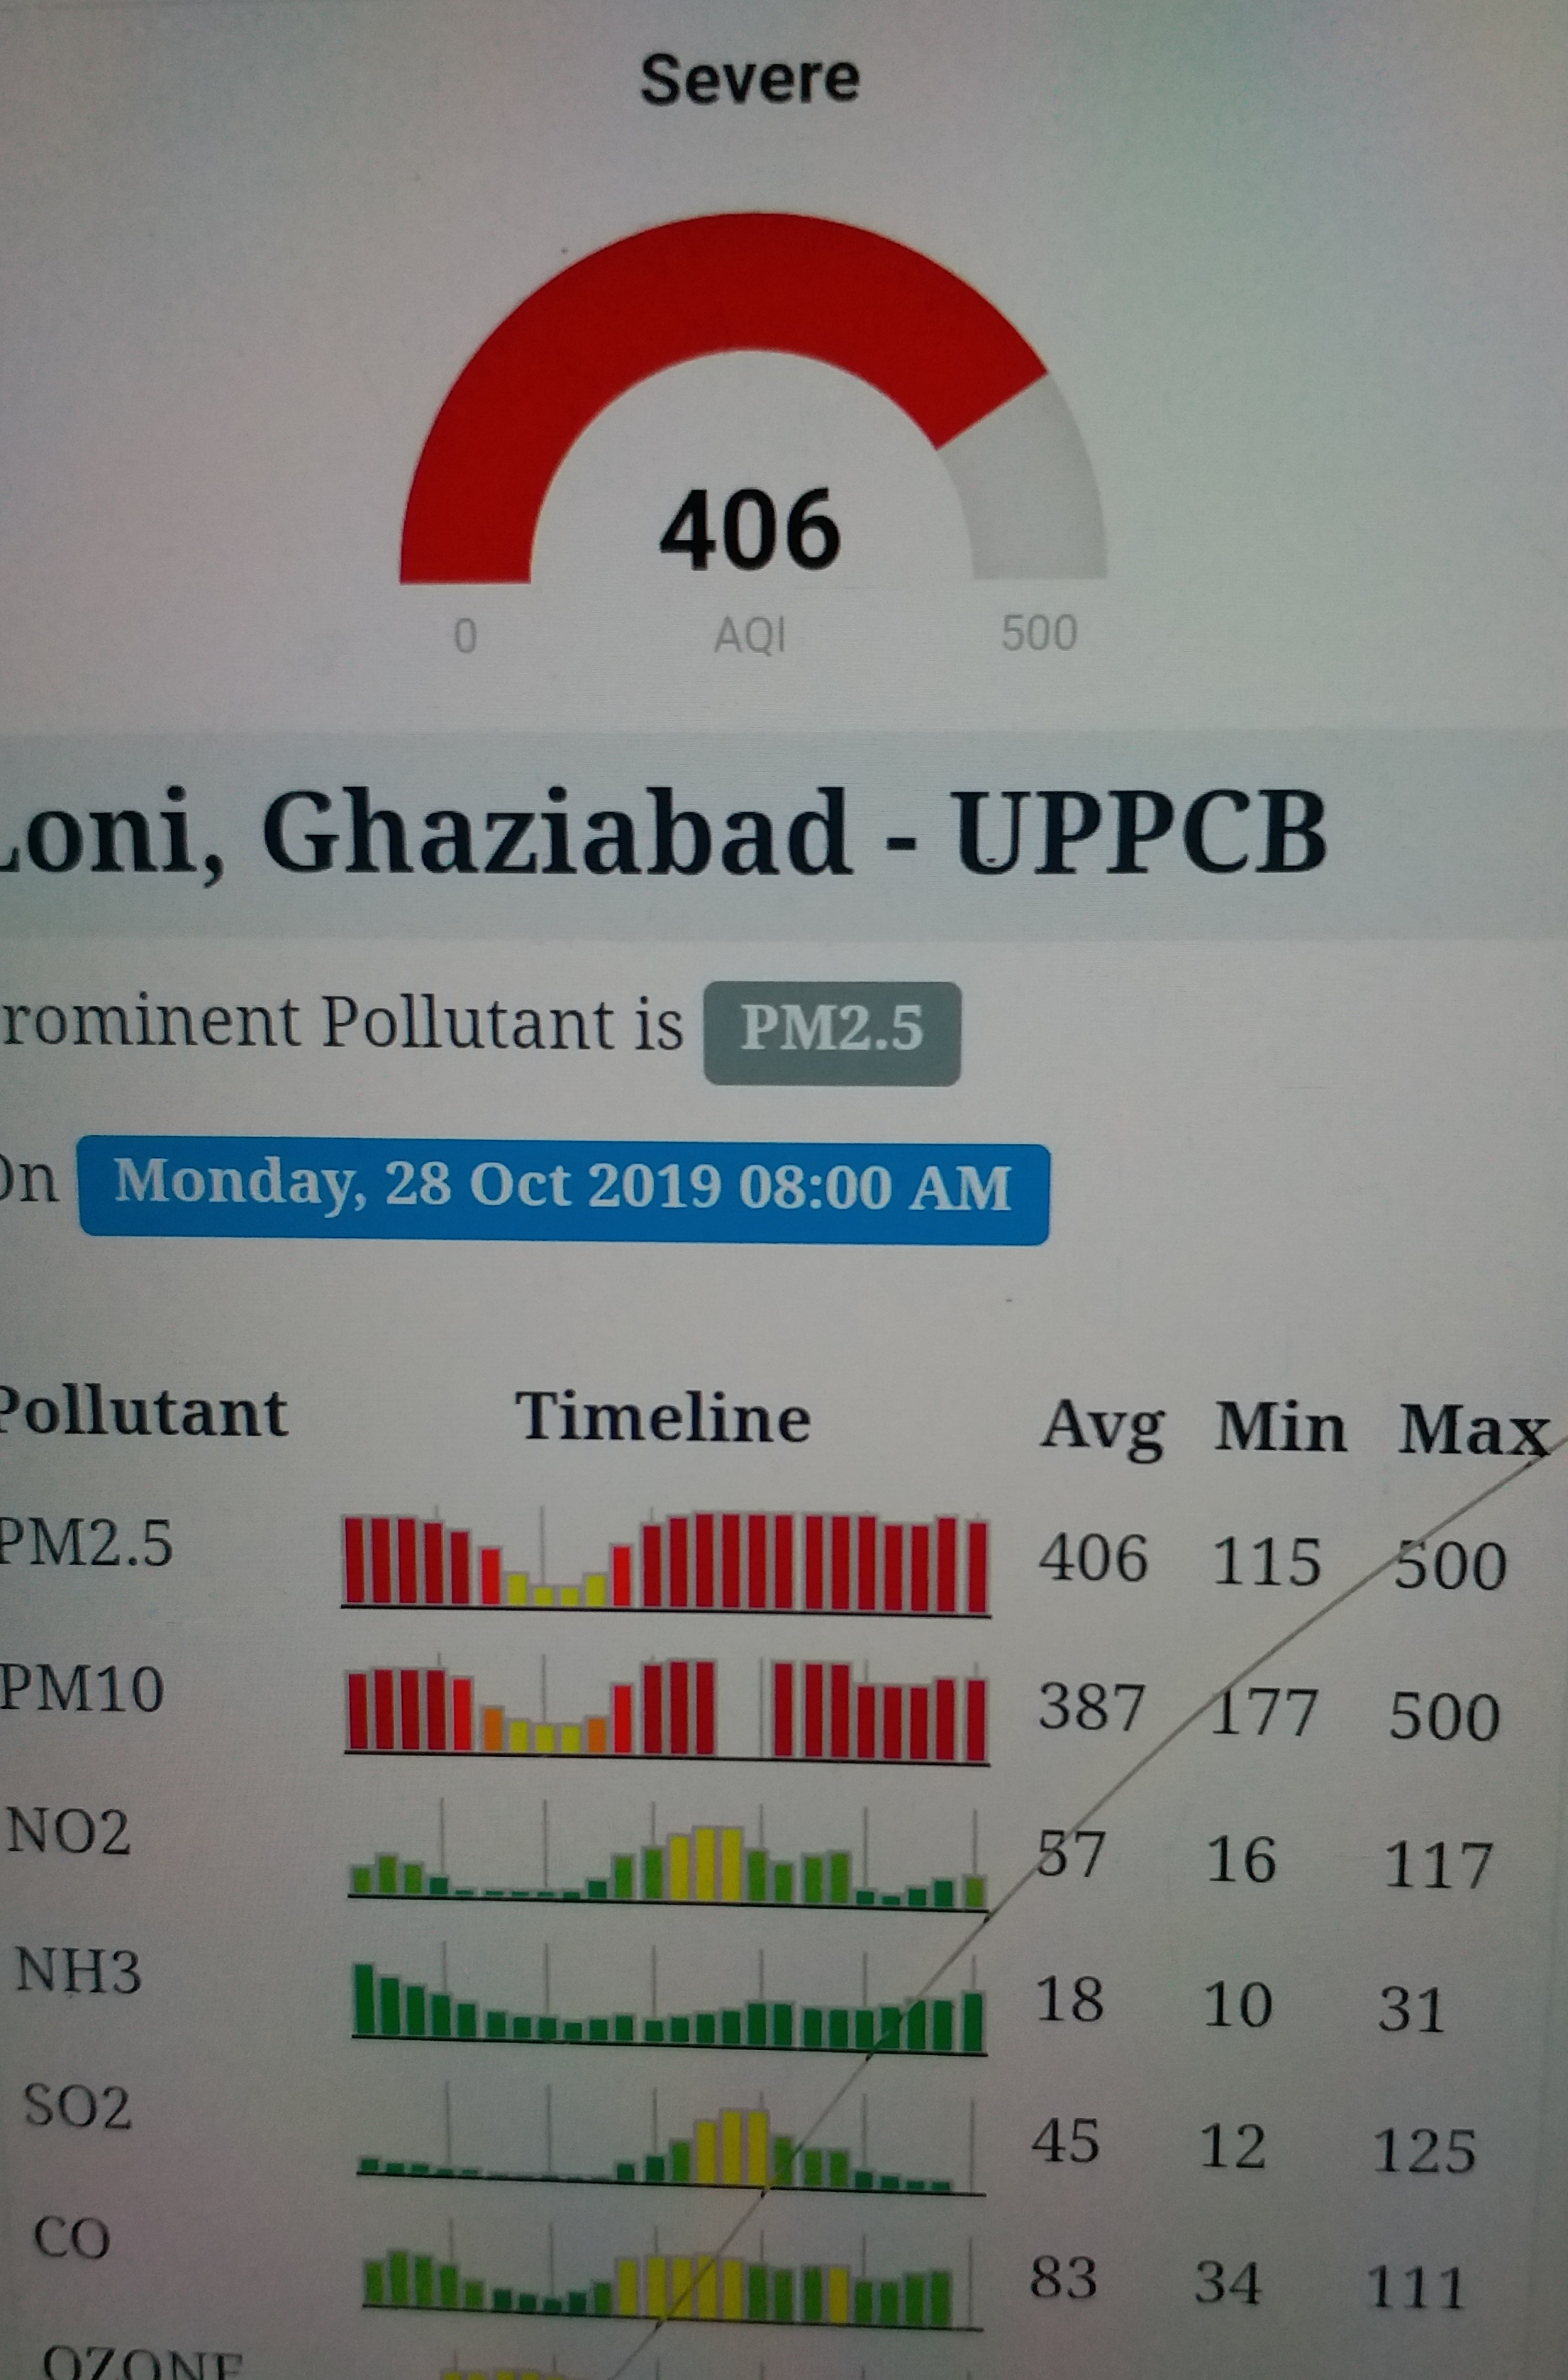 air quality index of delhi etv bharat